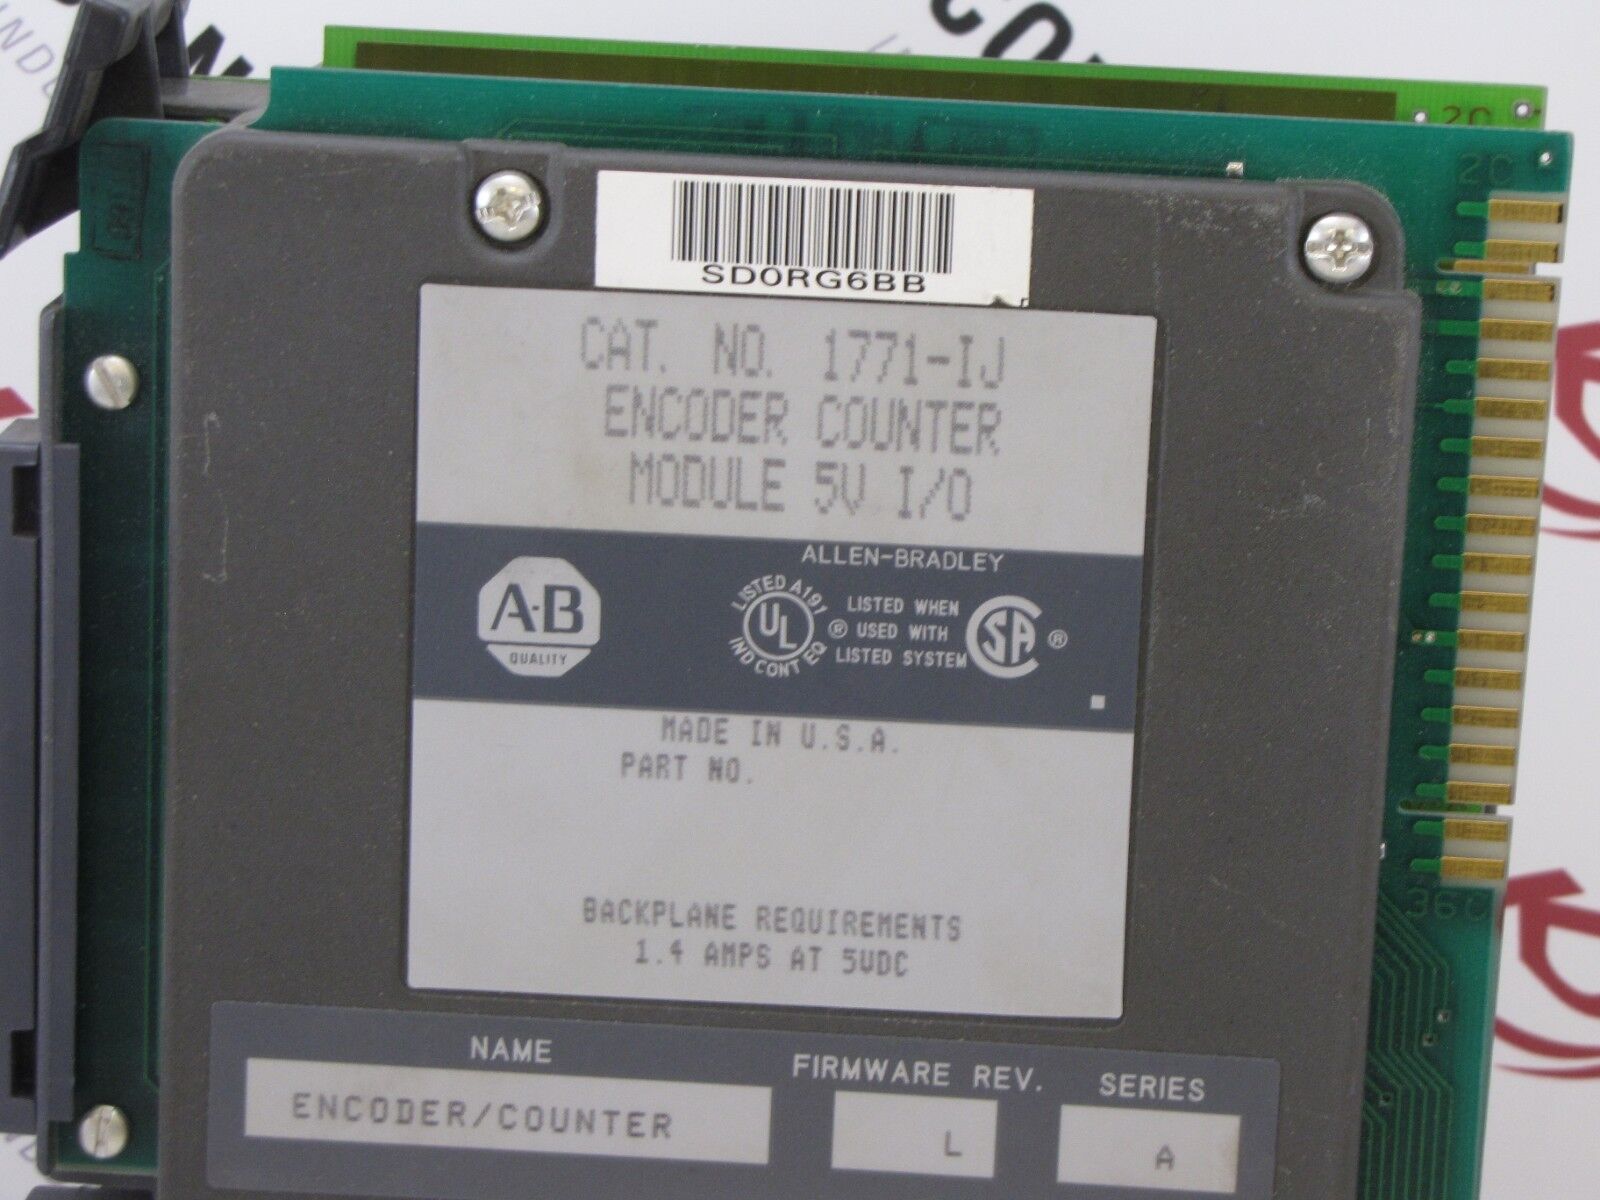 Allen-Bradley 1771-IJ Encoder Counter I/O Module Assembly 5VDC